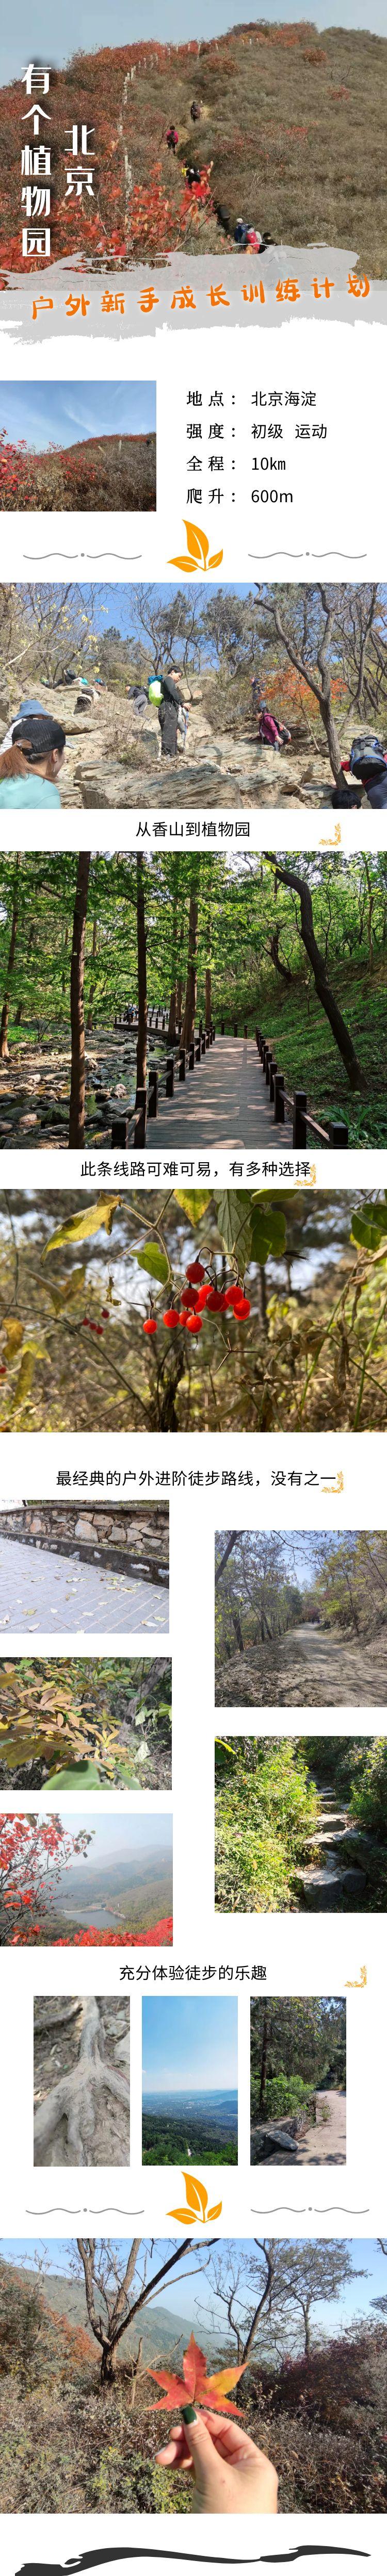 北京有个植物园